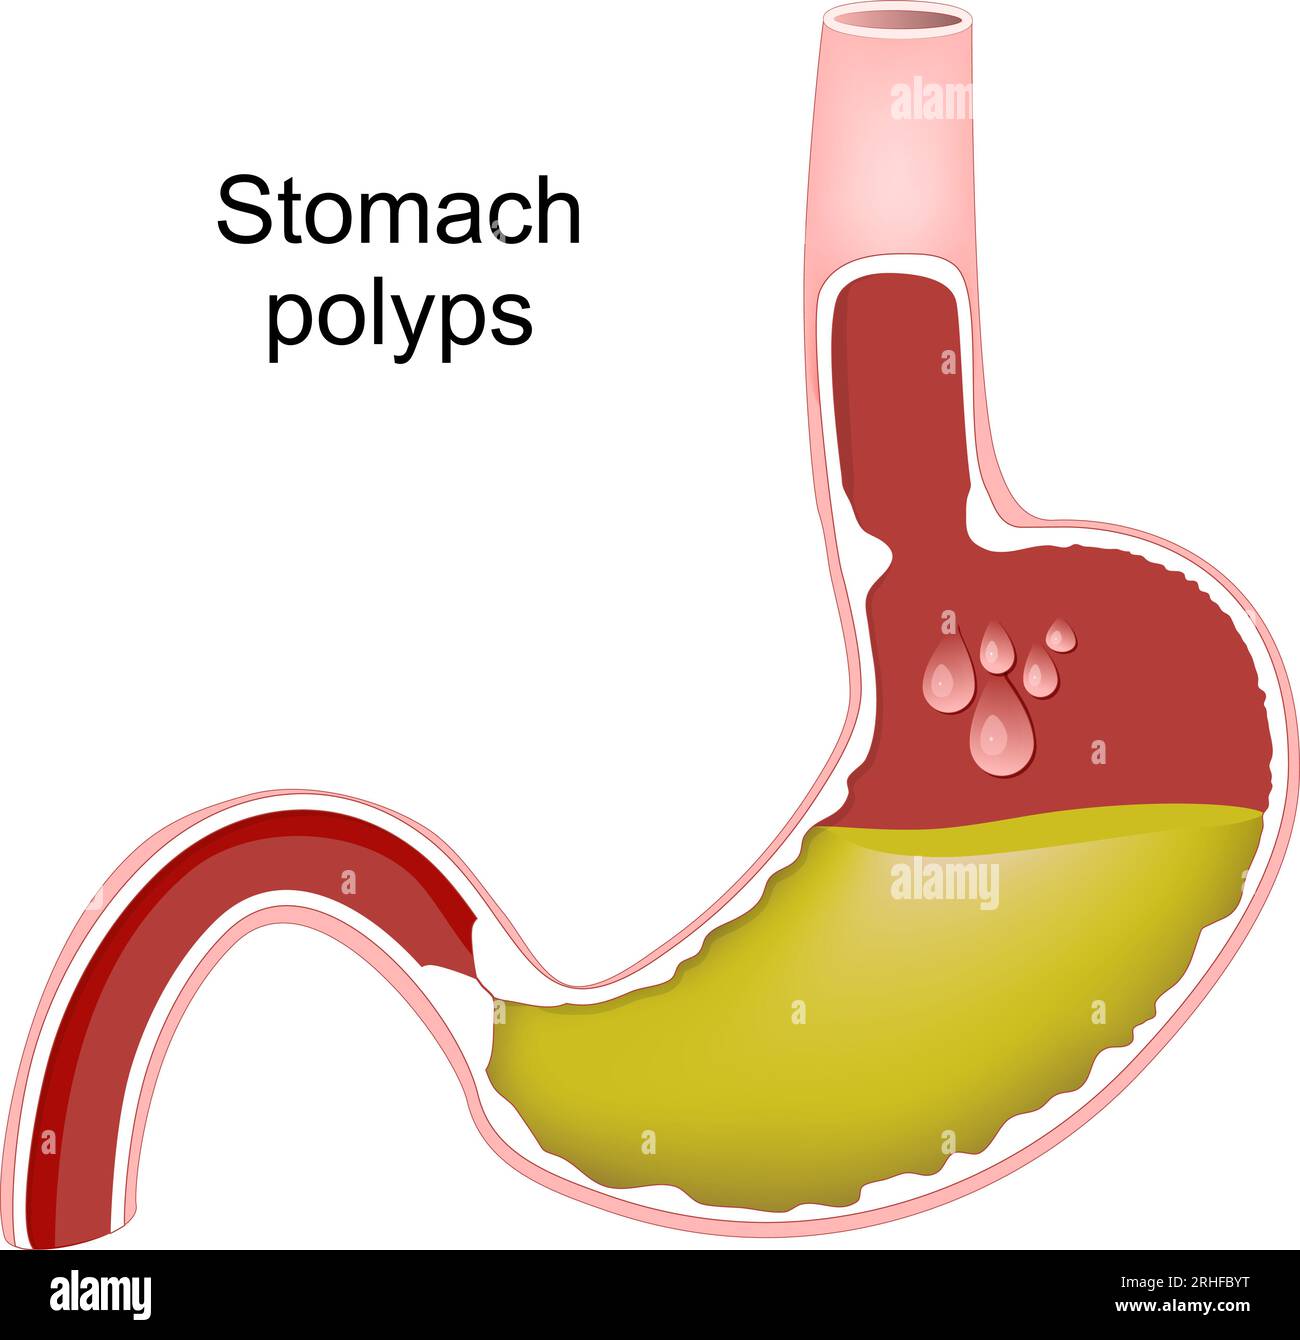 Polipi dello stomaco. Sezione trasversale dello stomaco umano con polipi gastrici. Iperplasia del rivestimento gastrico. Infezione batterica causata da Helicobacter pylori. Illustrazione Vettoriale